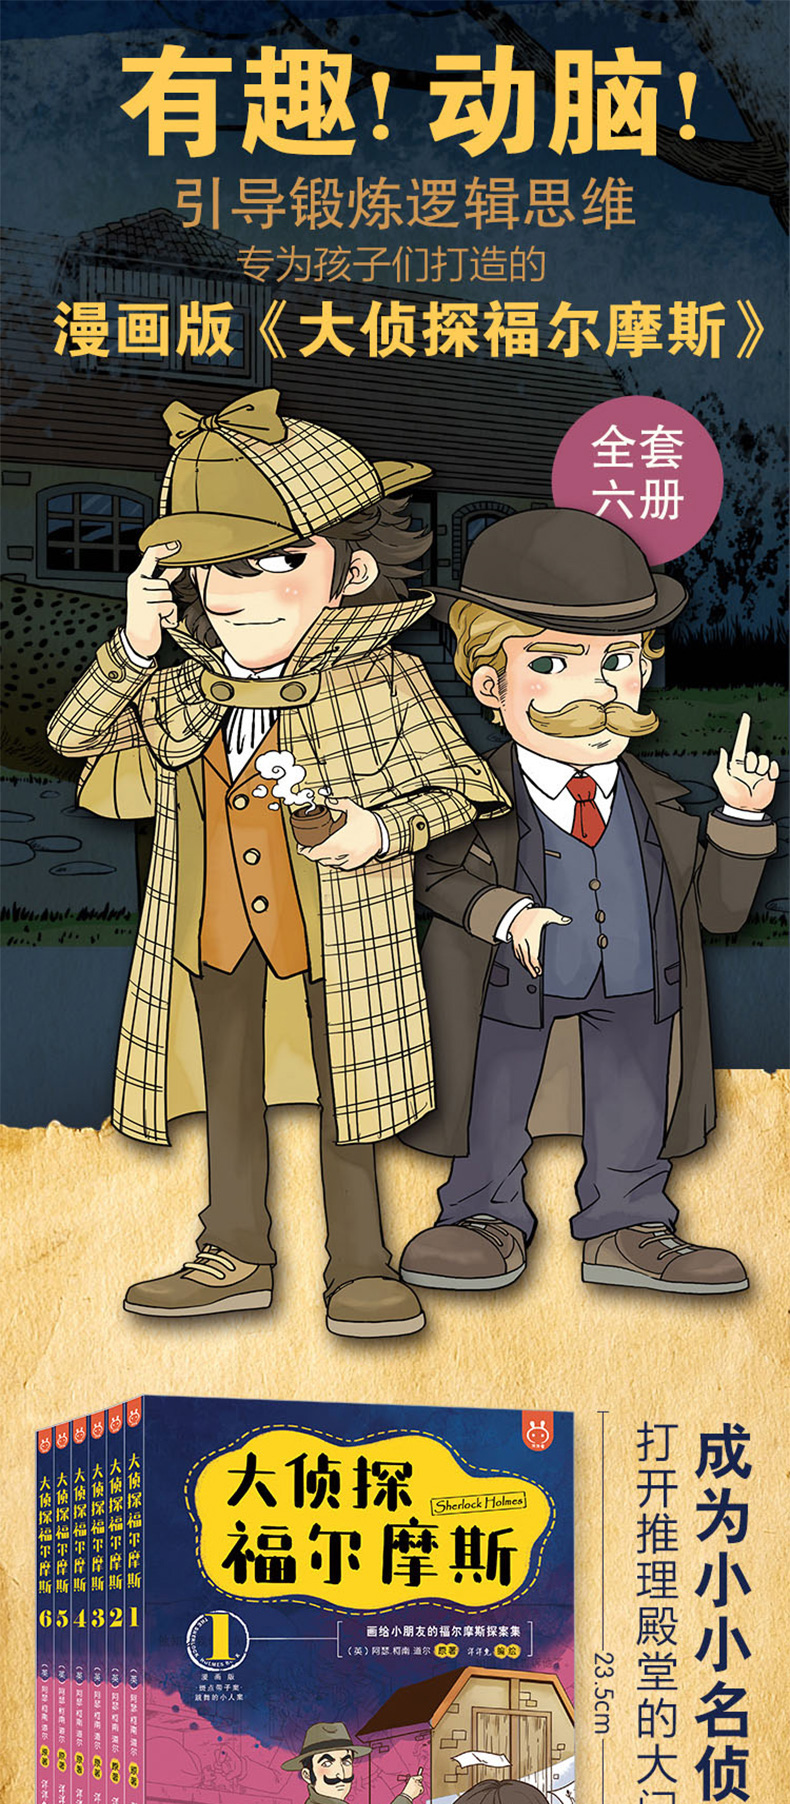 侦探漫画第一期封面图片